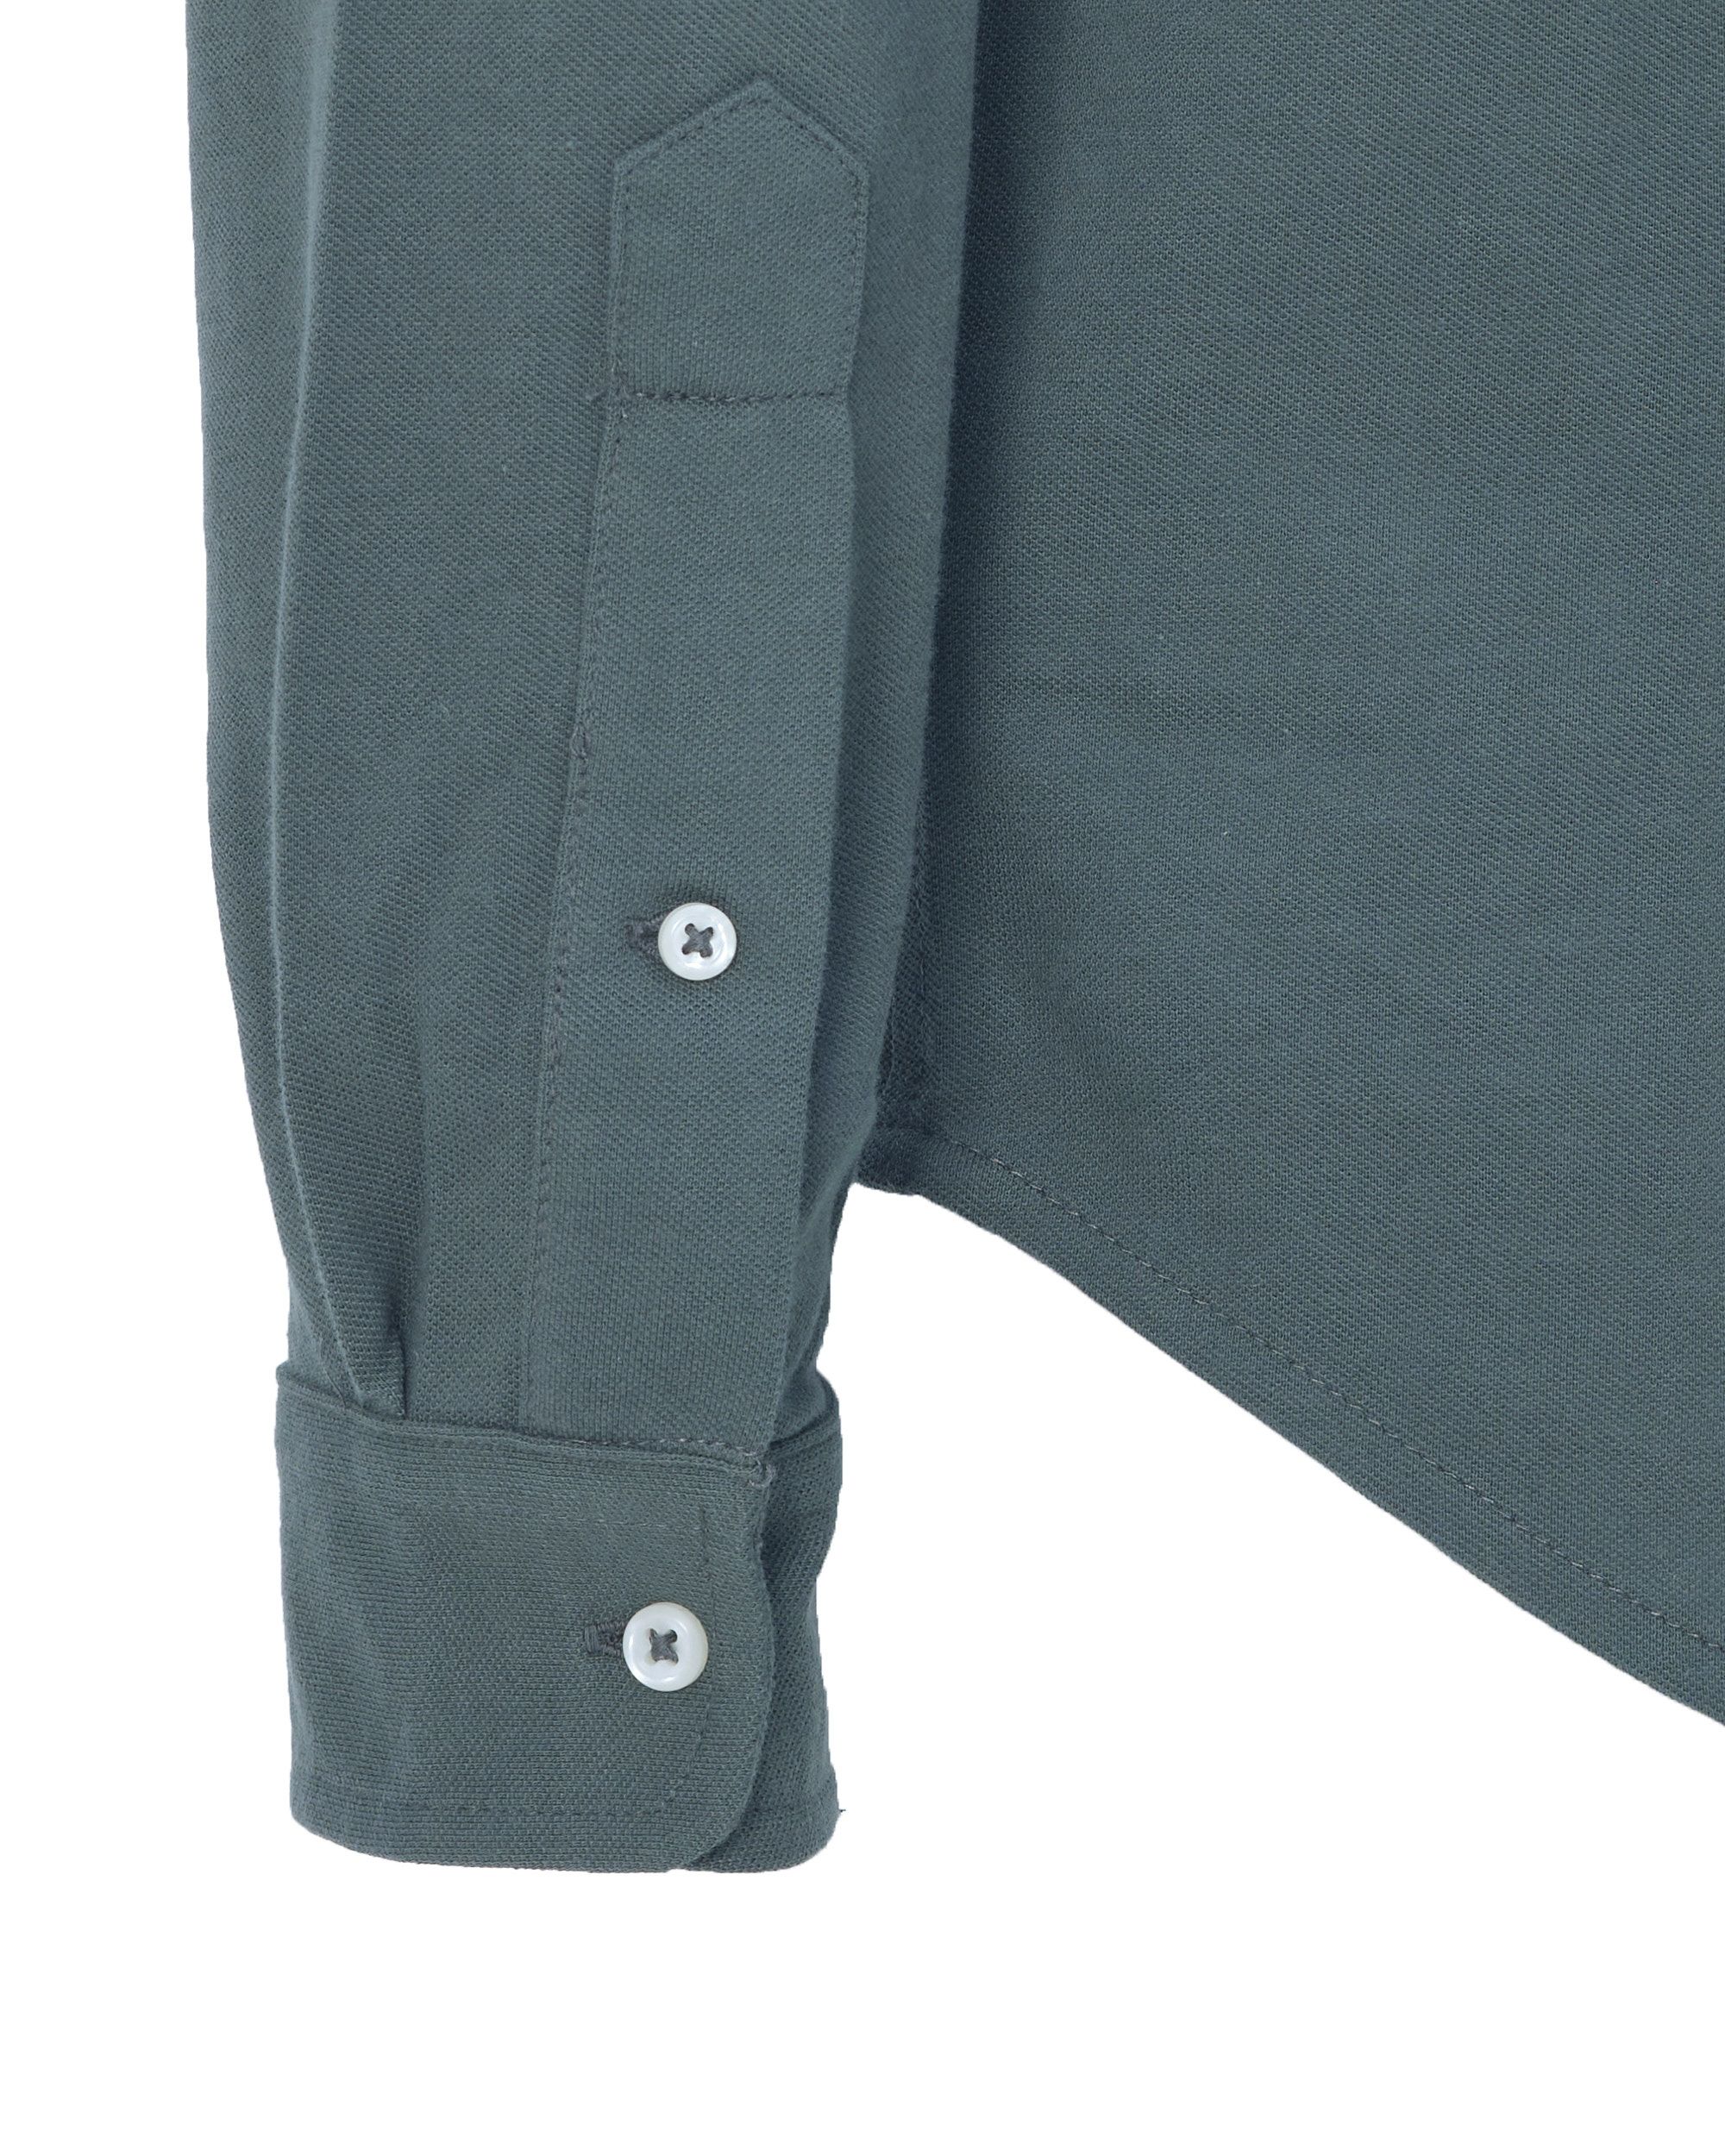 Polo Ralph Lauren Casual Overhemd LM Groen 080588-001-L